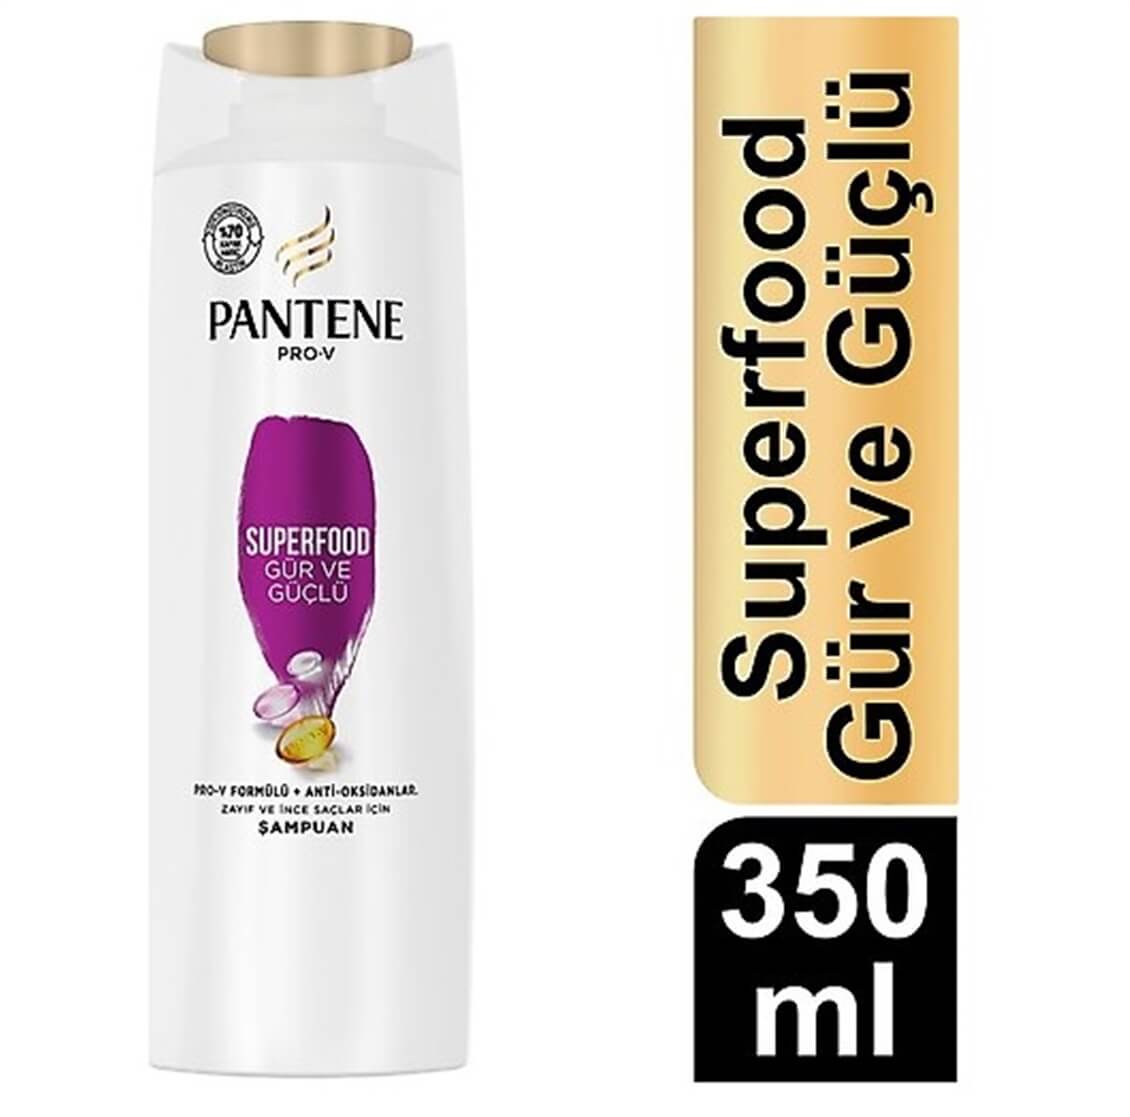 pantene hair superfood szampon